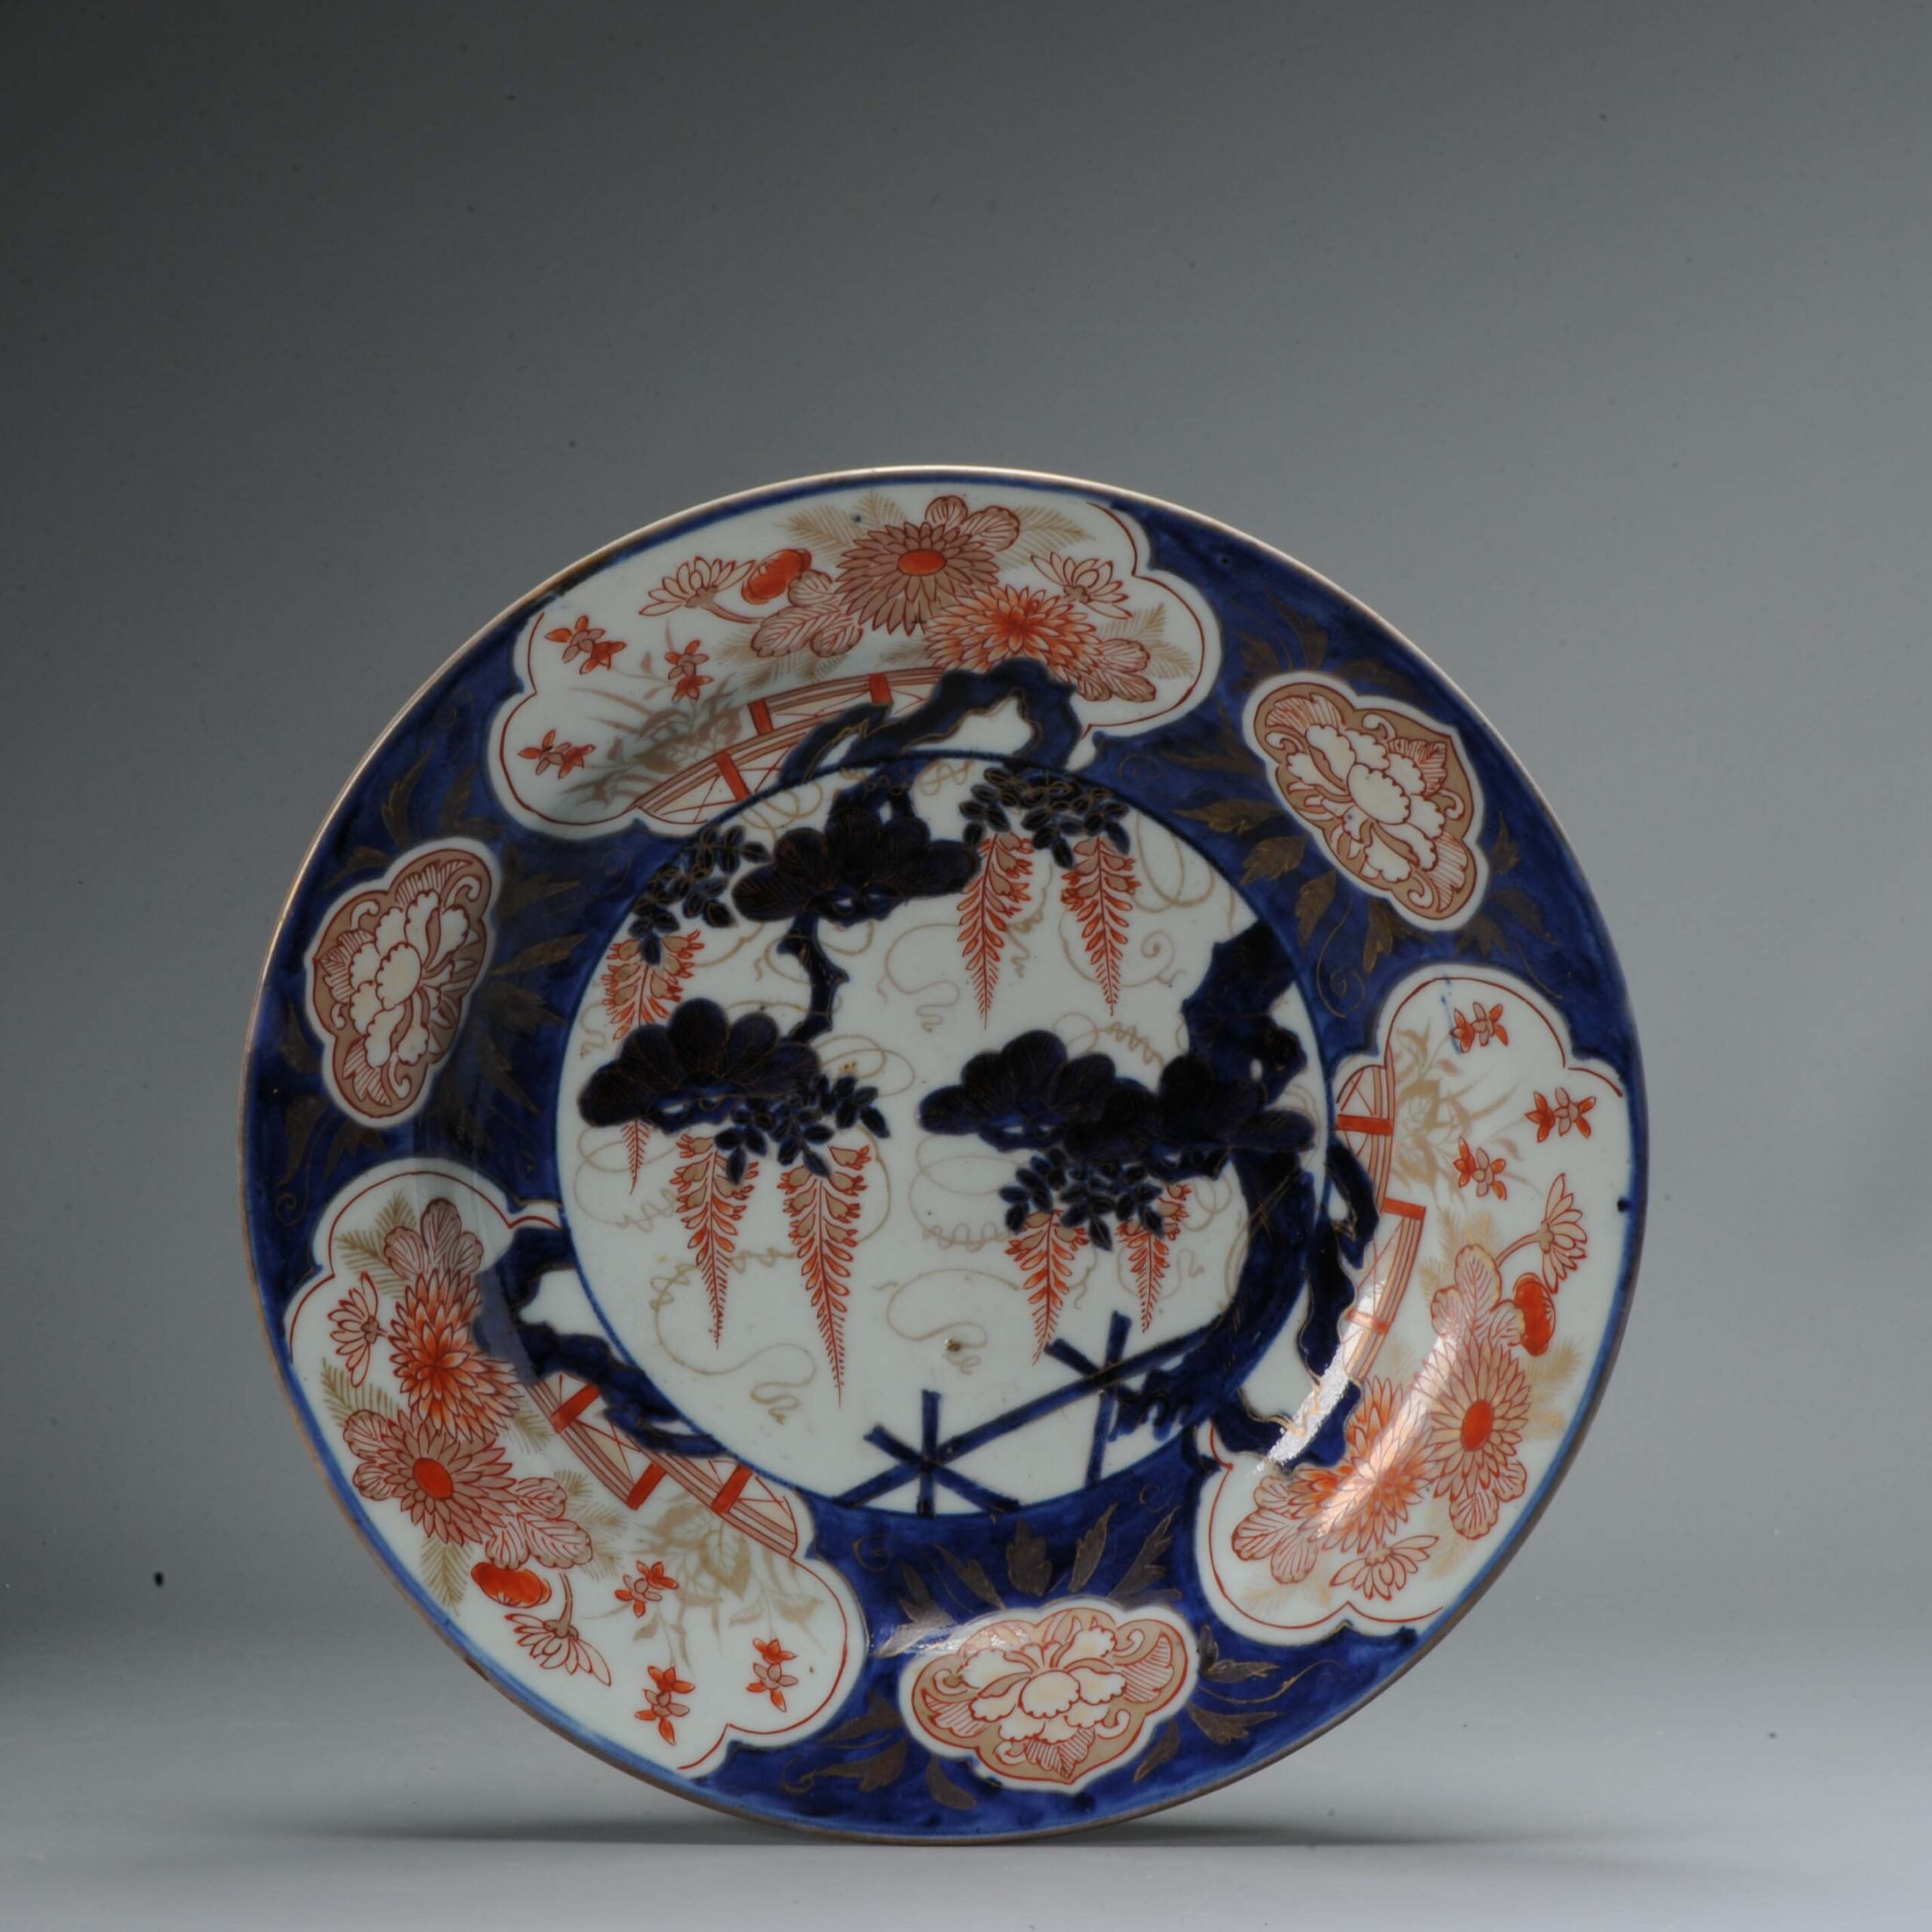 29CM Antique Edo period 1680-1700 Japanese Porcelain Imari Plate with Wisteria Arita